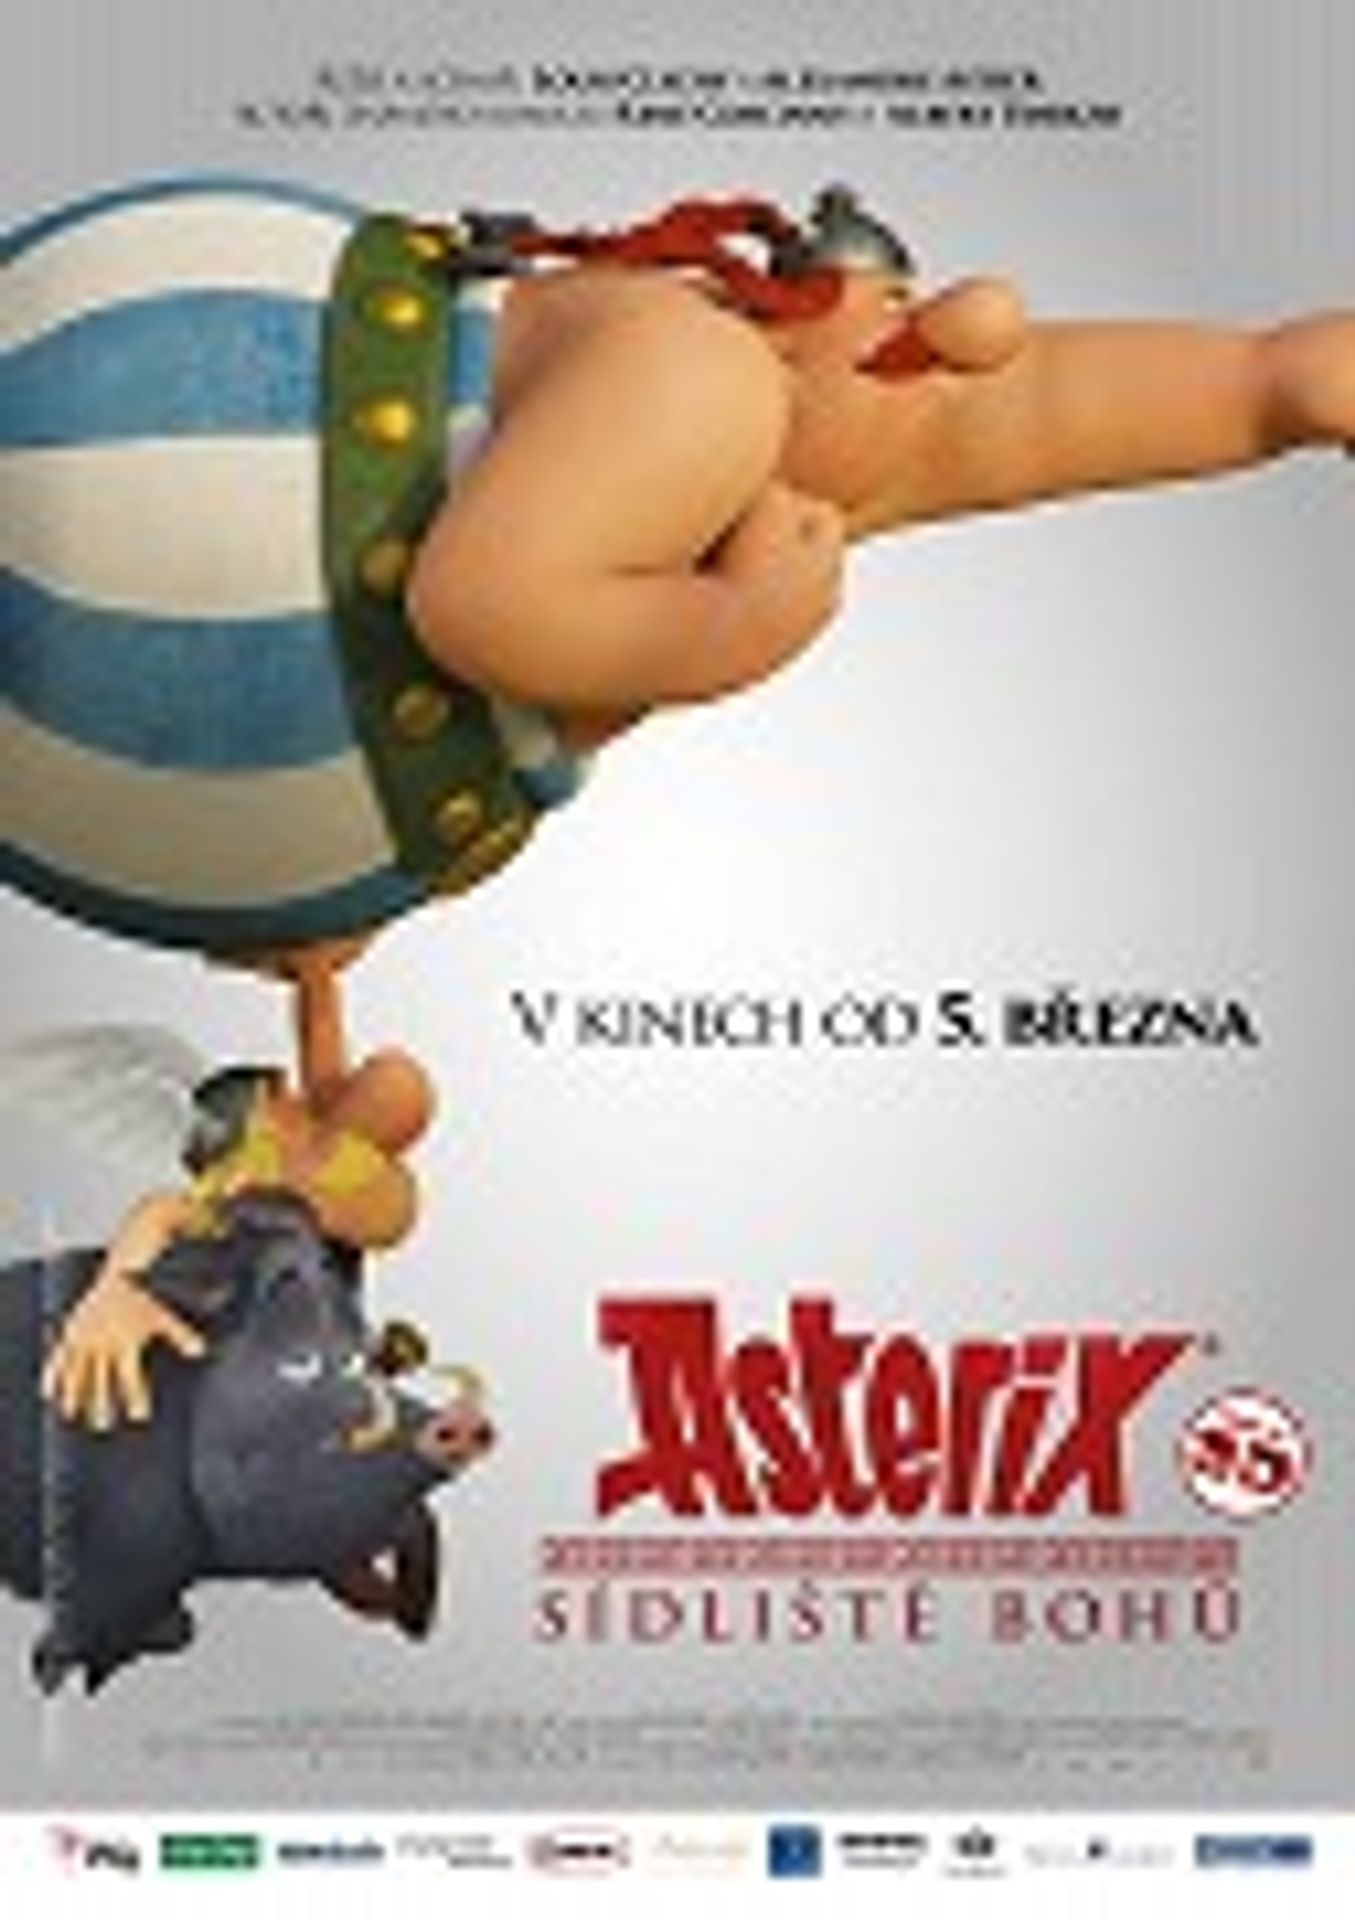 Asterix: Sídliště bohů - 20 let Novy: 2008 (4/12)